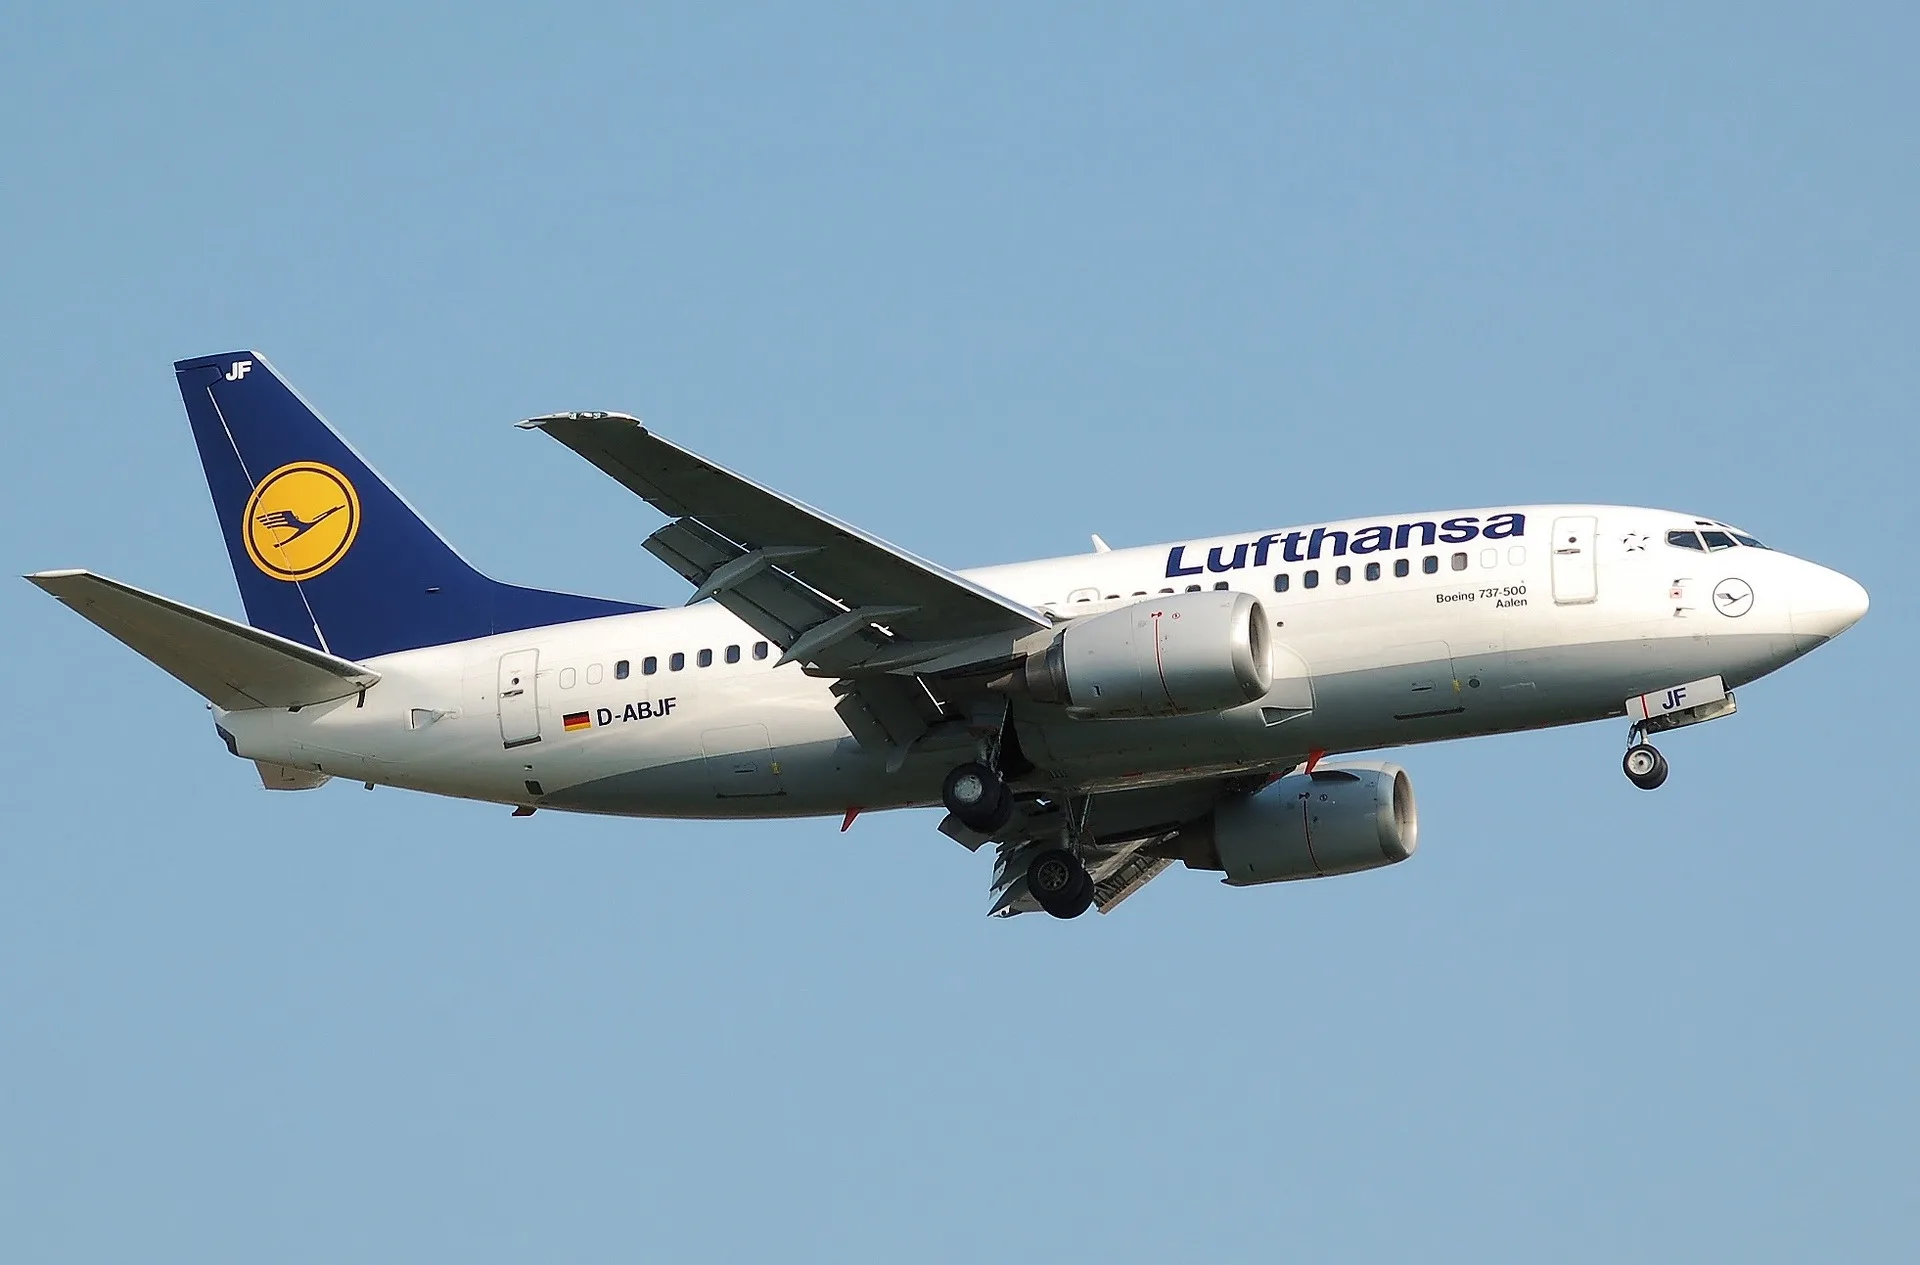 Kostenloses Internet für Telekom Kunden auf Lufthansa Flügen in Europa